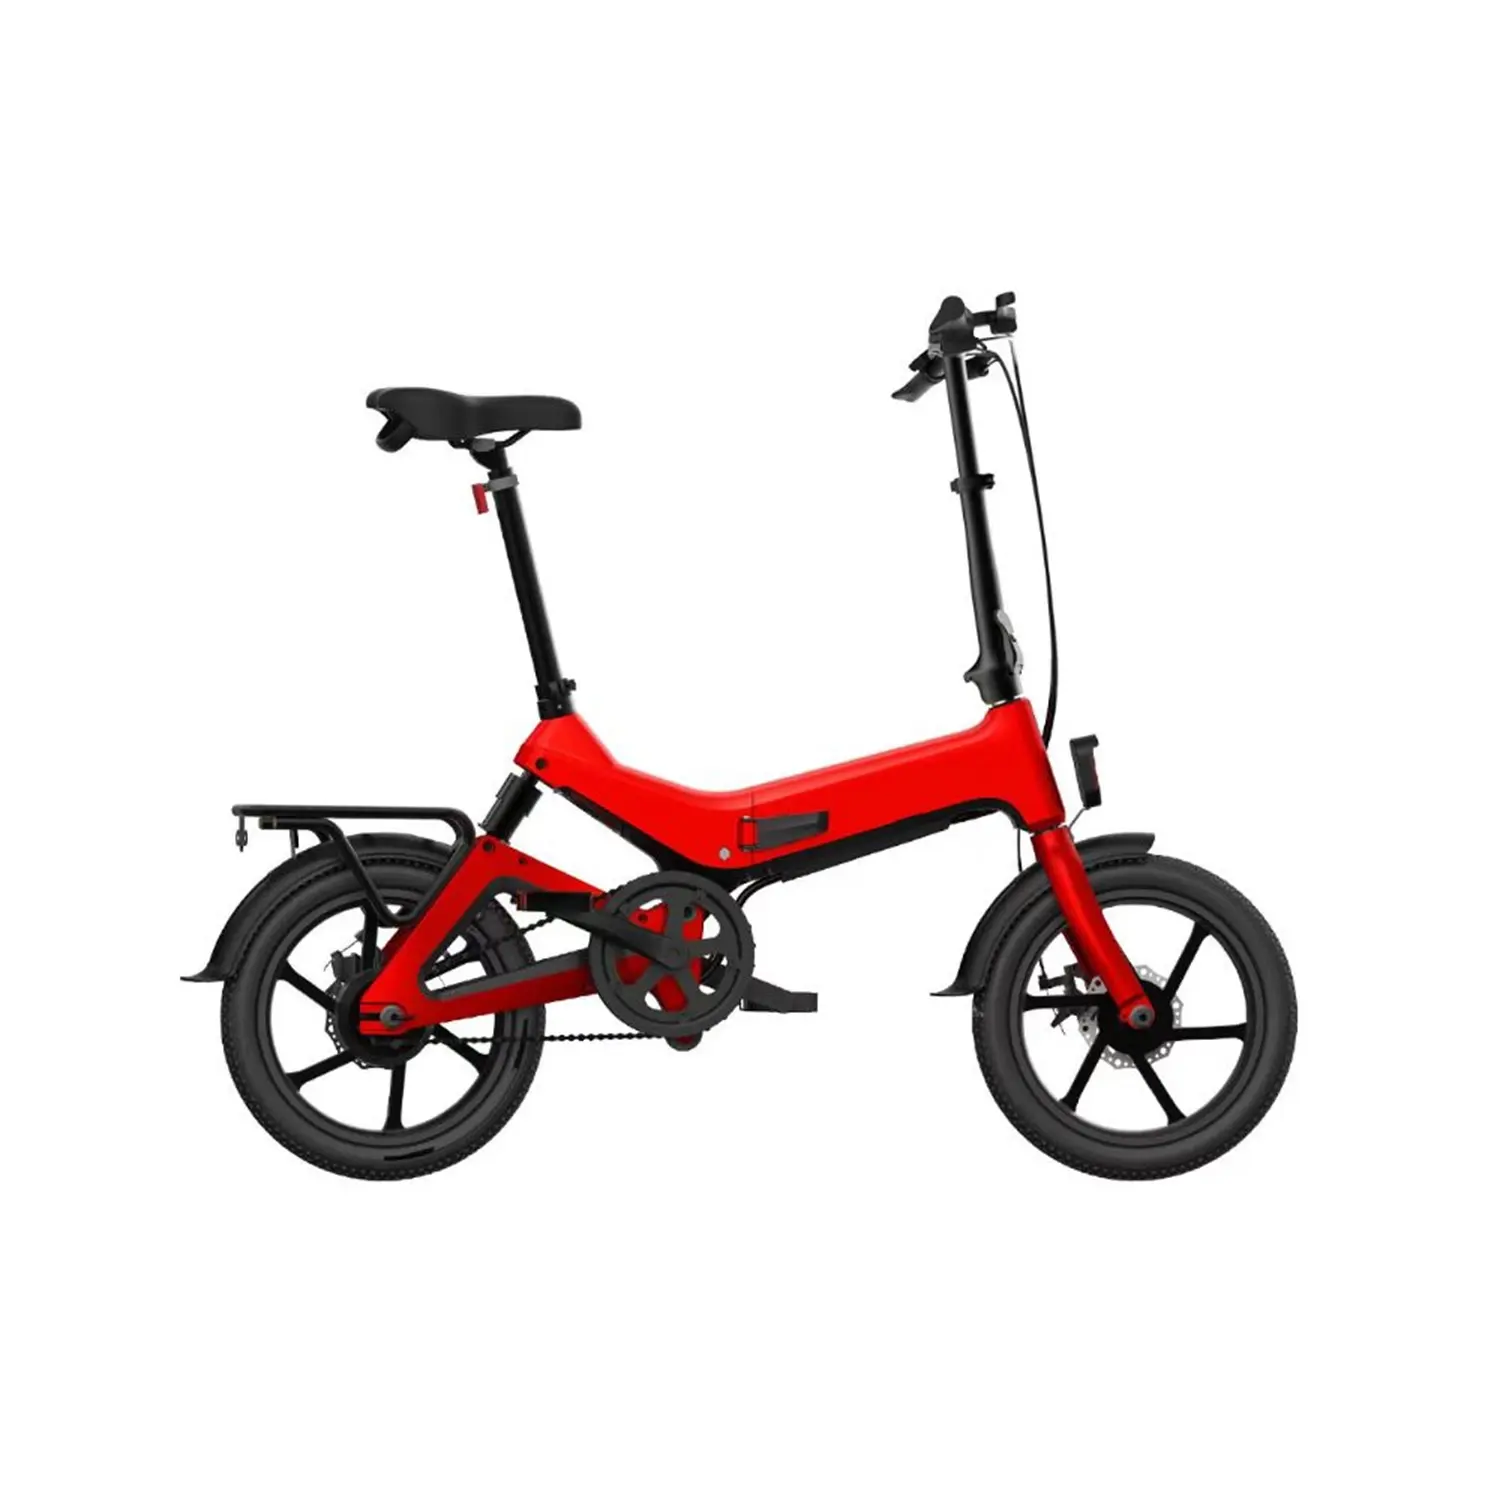 Bicicleta eléctrica de montaña de suspensión completa, neumático ancho de 16x2.125 pulgadas